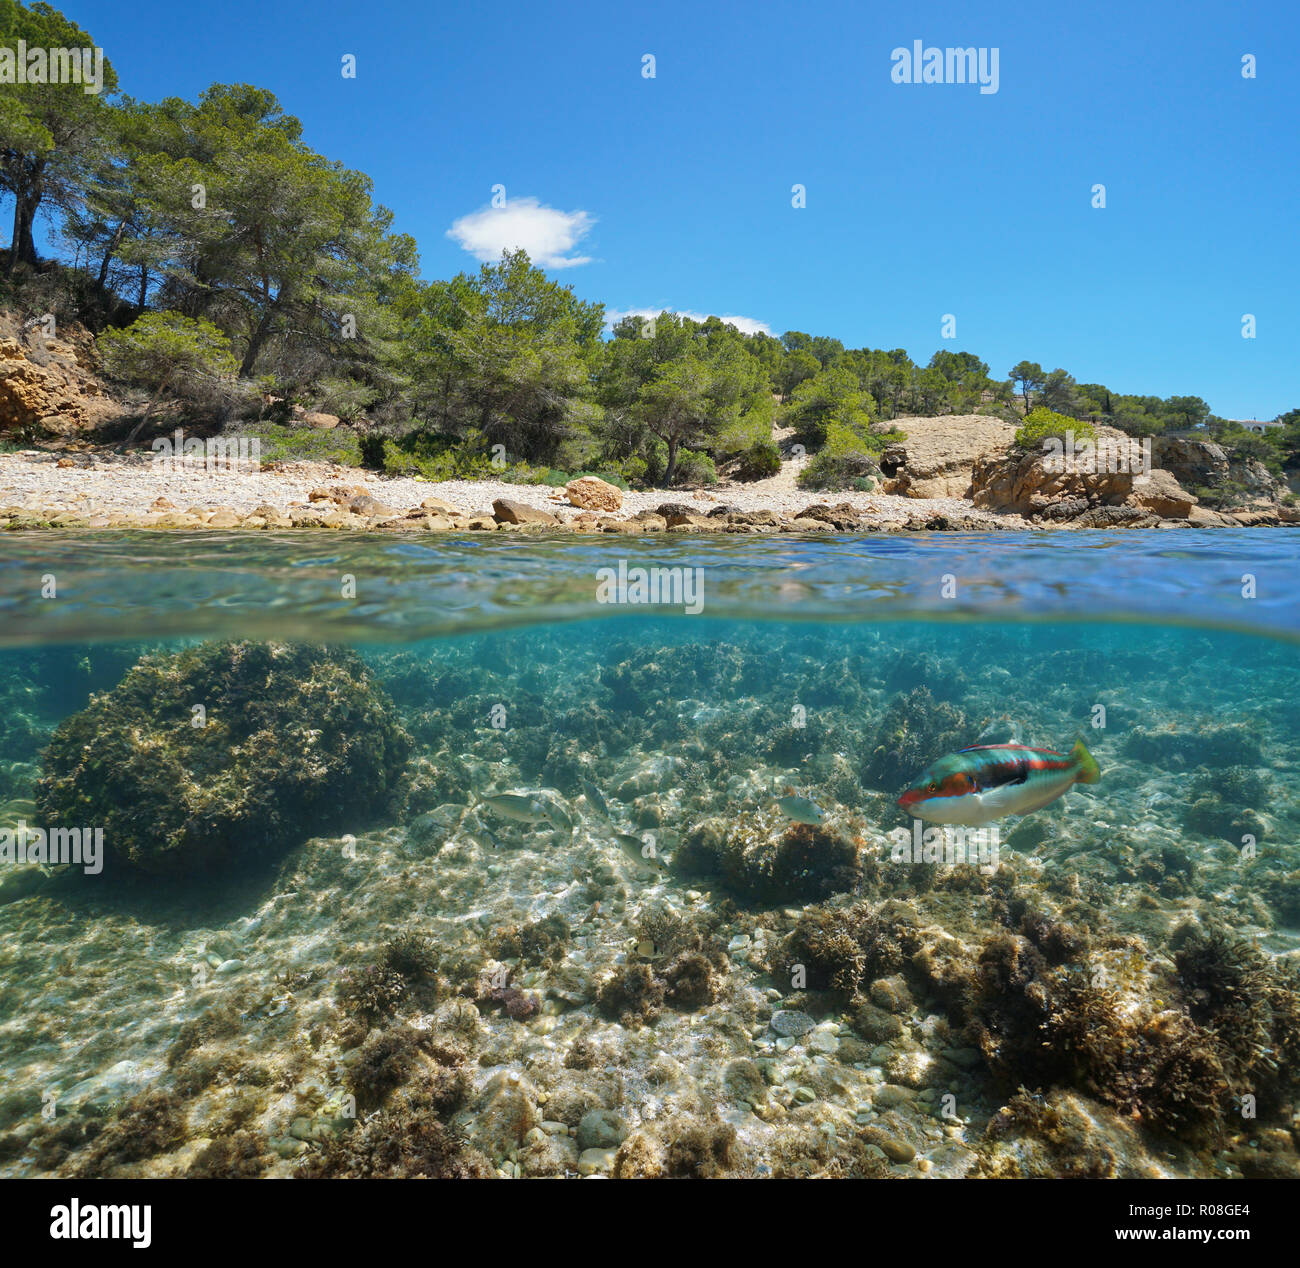 Felsige Bucht mit Fisch unter Wasser in der Nähe der Küste, geteilte Ansicht Hälfte oberhalb und unterhalb der Wasseroberfläche, Mittelmeer, Katalonien, Costa Dorada, Spanien Stockfoto